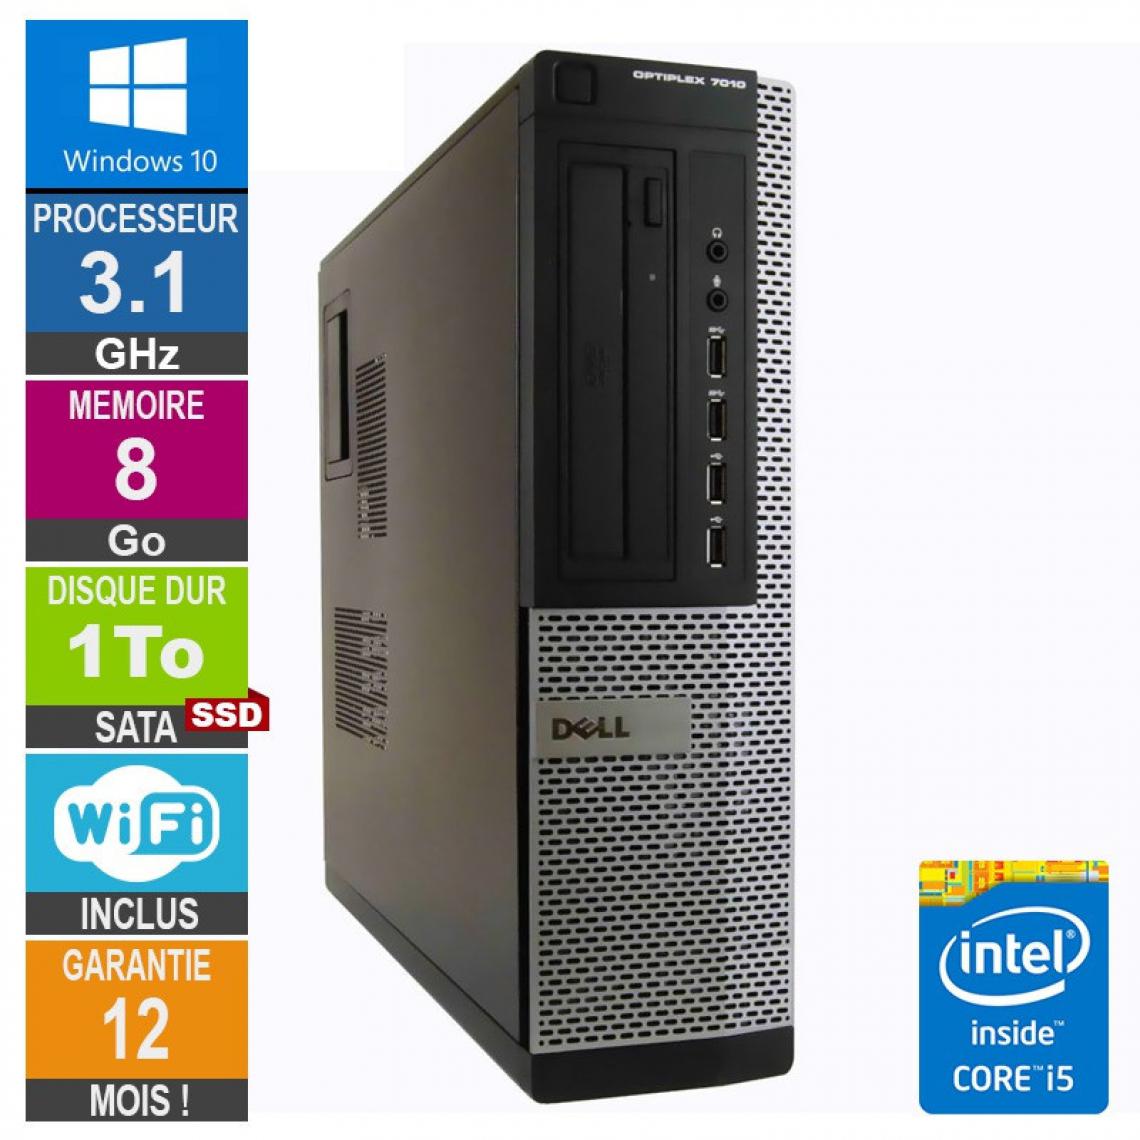 Dell - PC Dell Optiplex 7010 DT Core i5-2400 3.10GHz 8Go/1To SSD Wifi W10 - PC Fixe